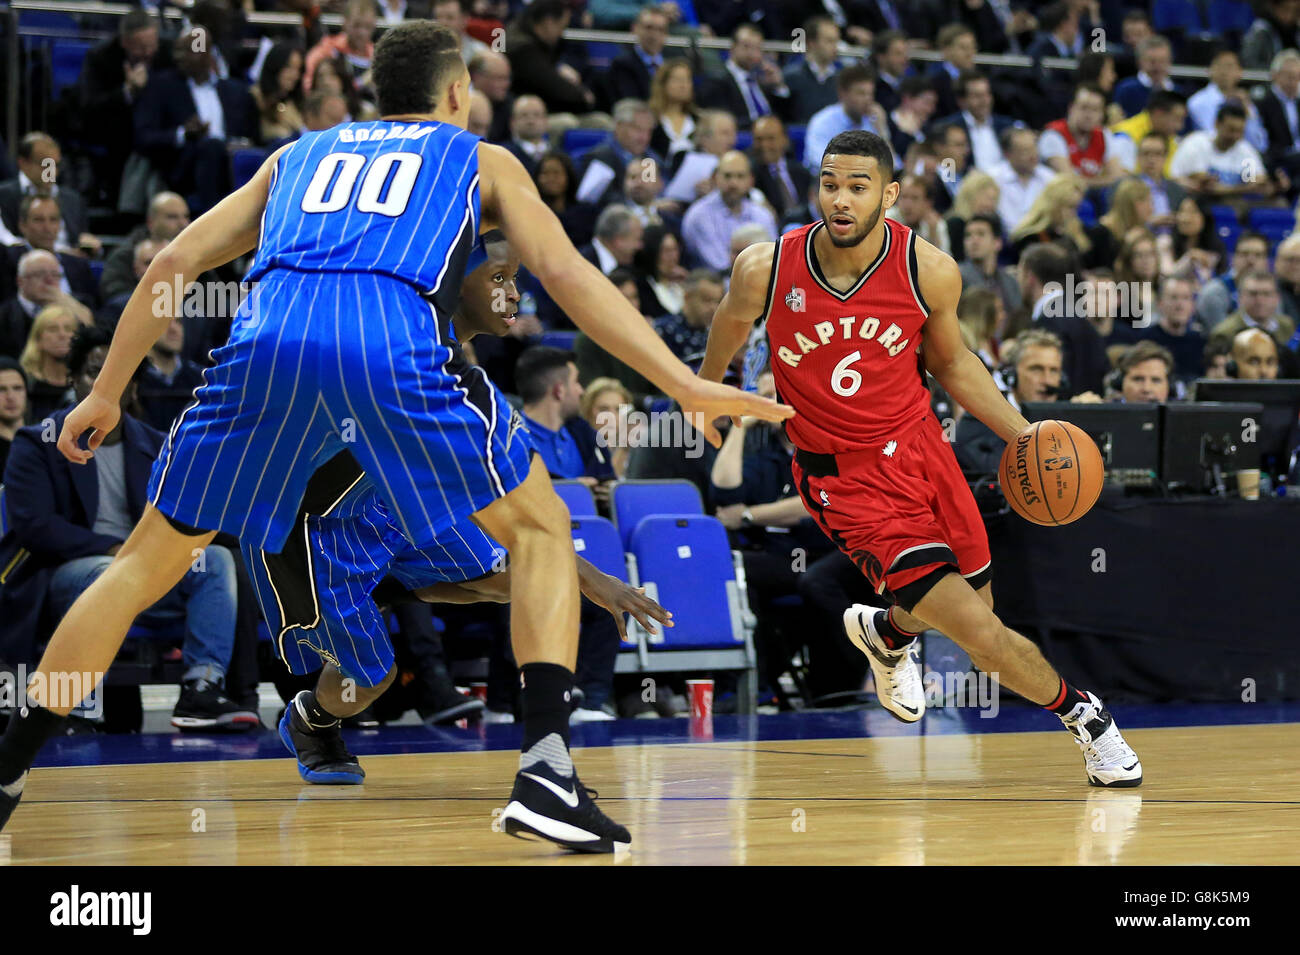 Orlando Magic v Toronto Raptors - NBA Global Games - O2 Arena. Toronto Raptors' Cory Joseph (a destra) in azione durante la partita NBA Global Games alla O2 Arena di Londra. Foto Stock